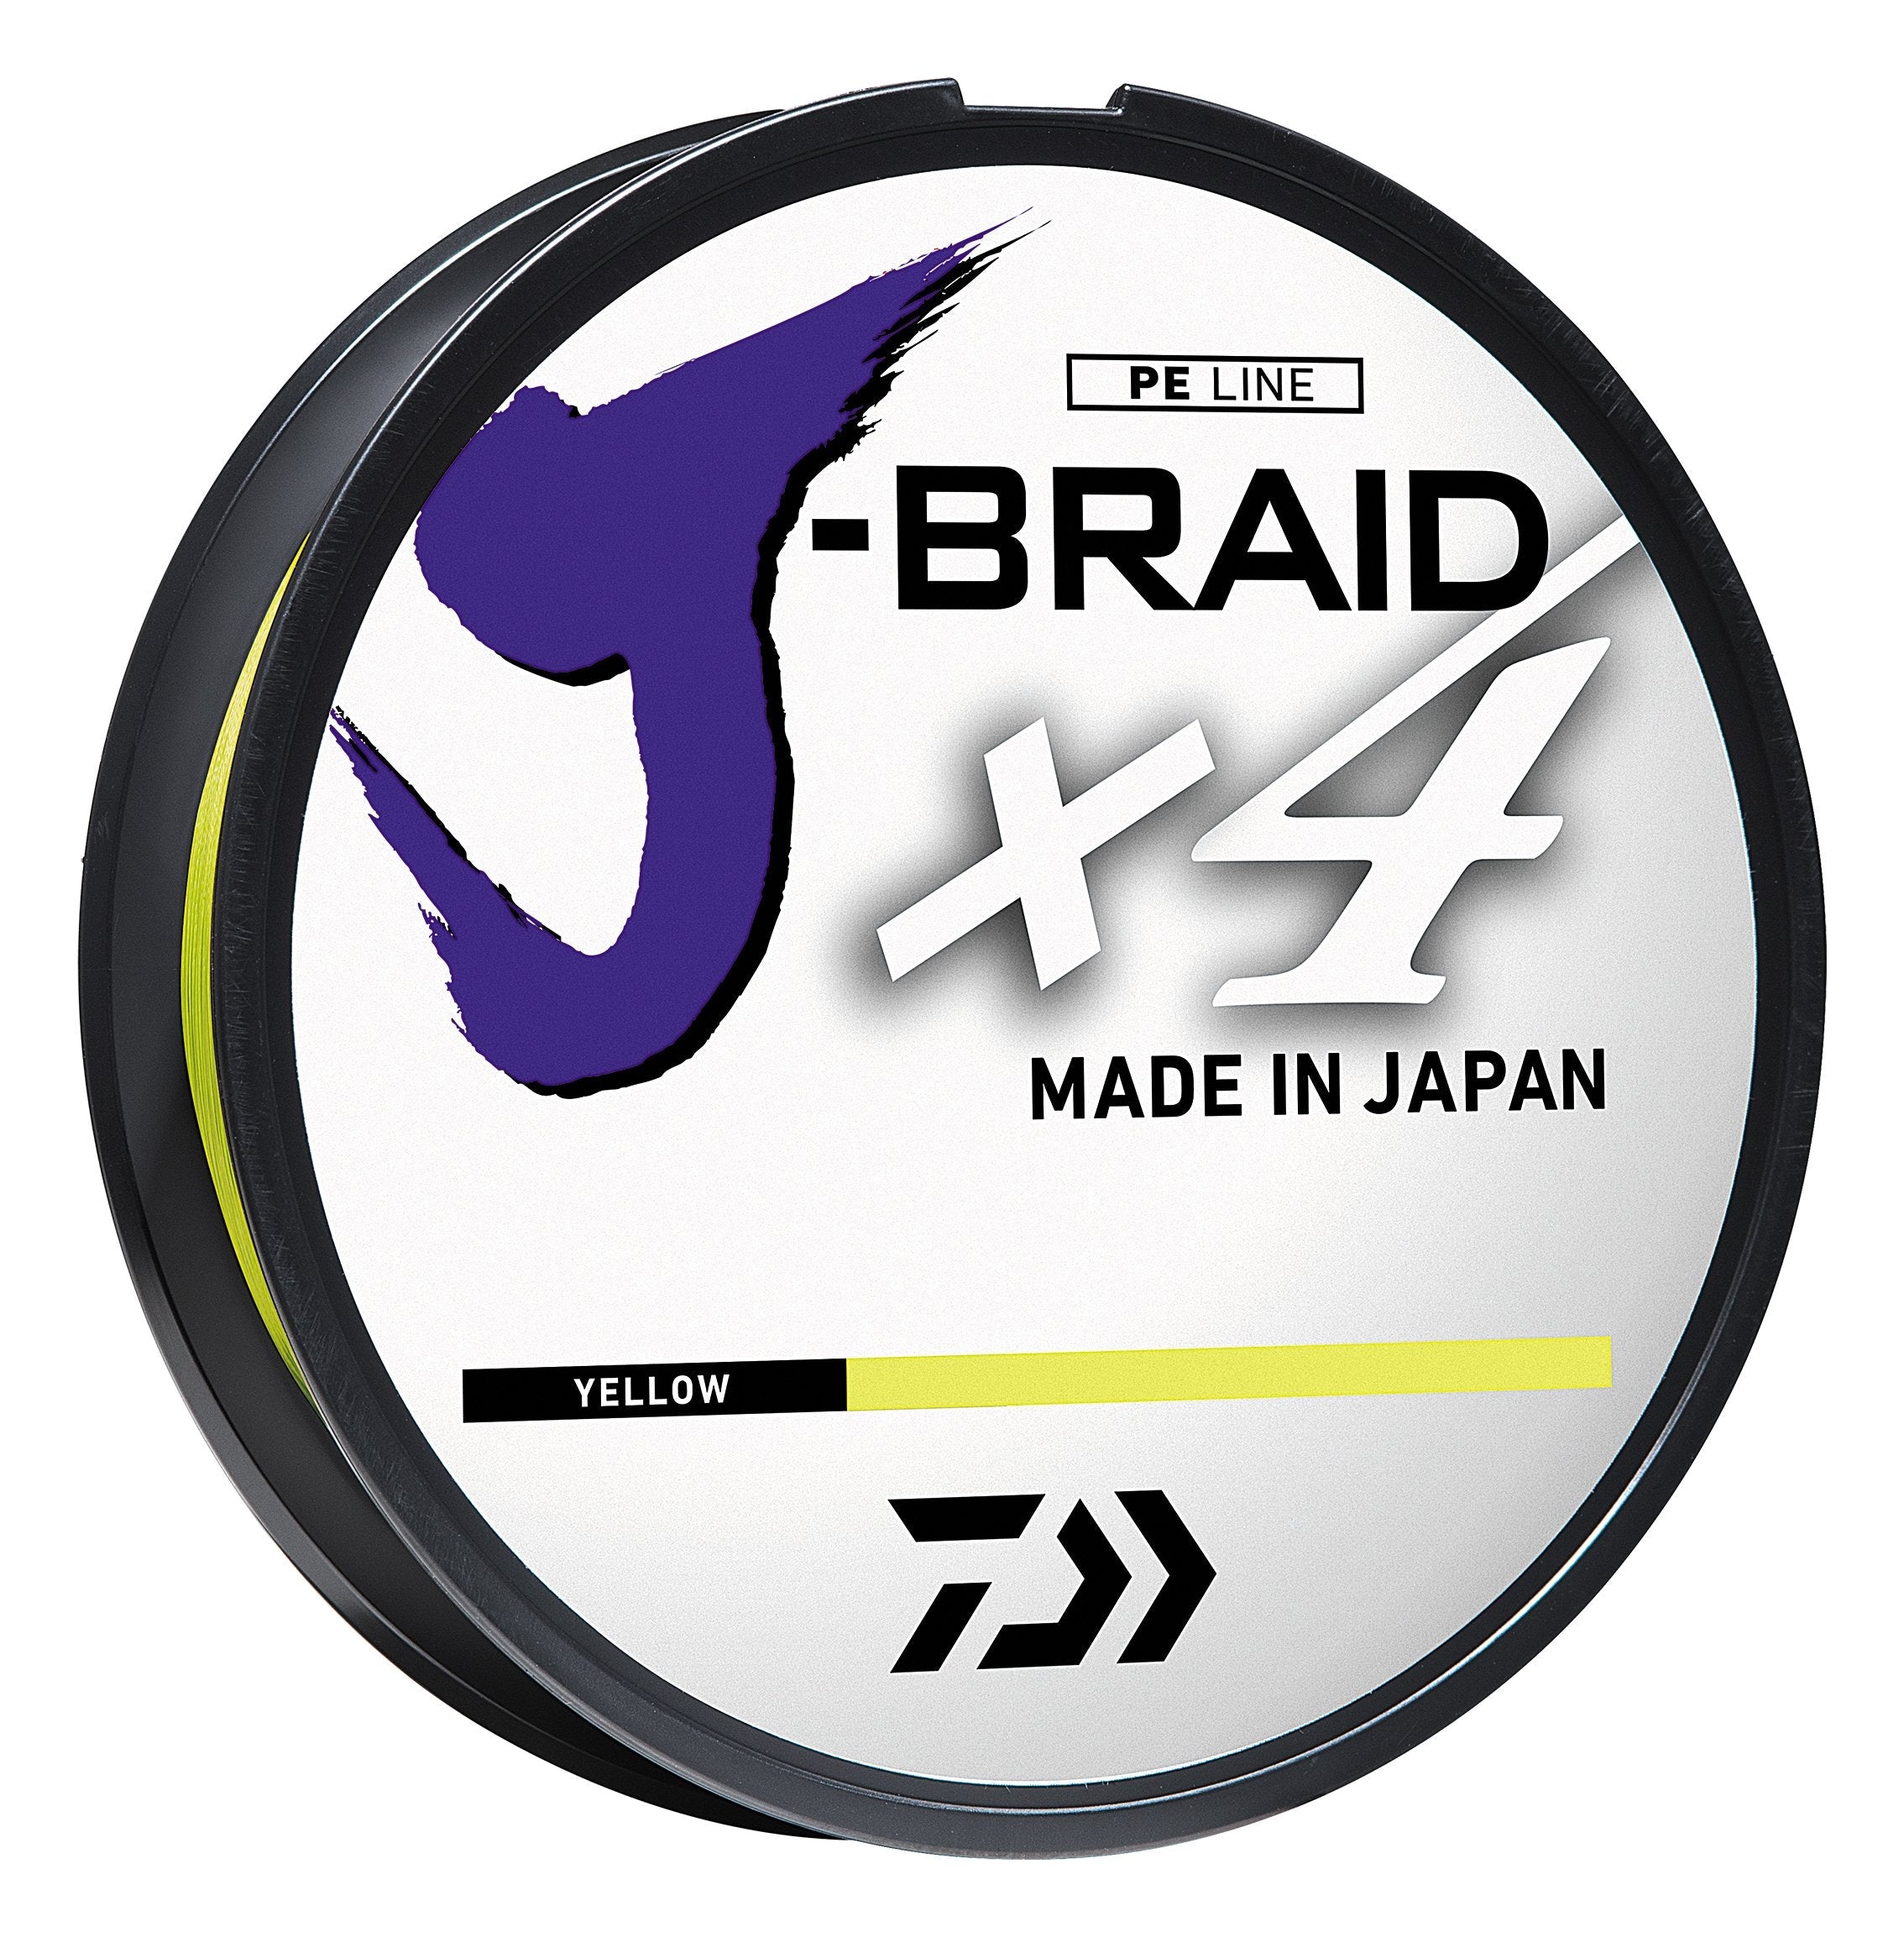 Yellow - Daiwa J-Braid X8/X4 Braided Fishing Line